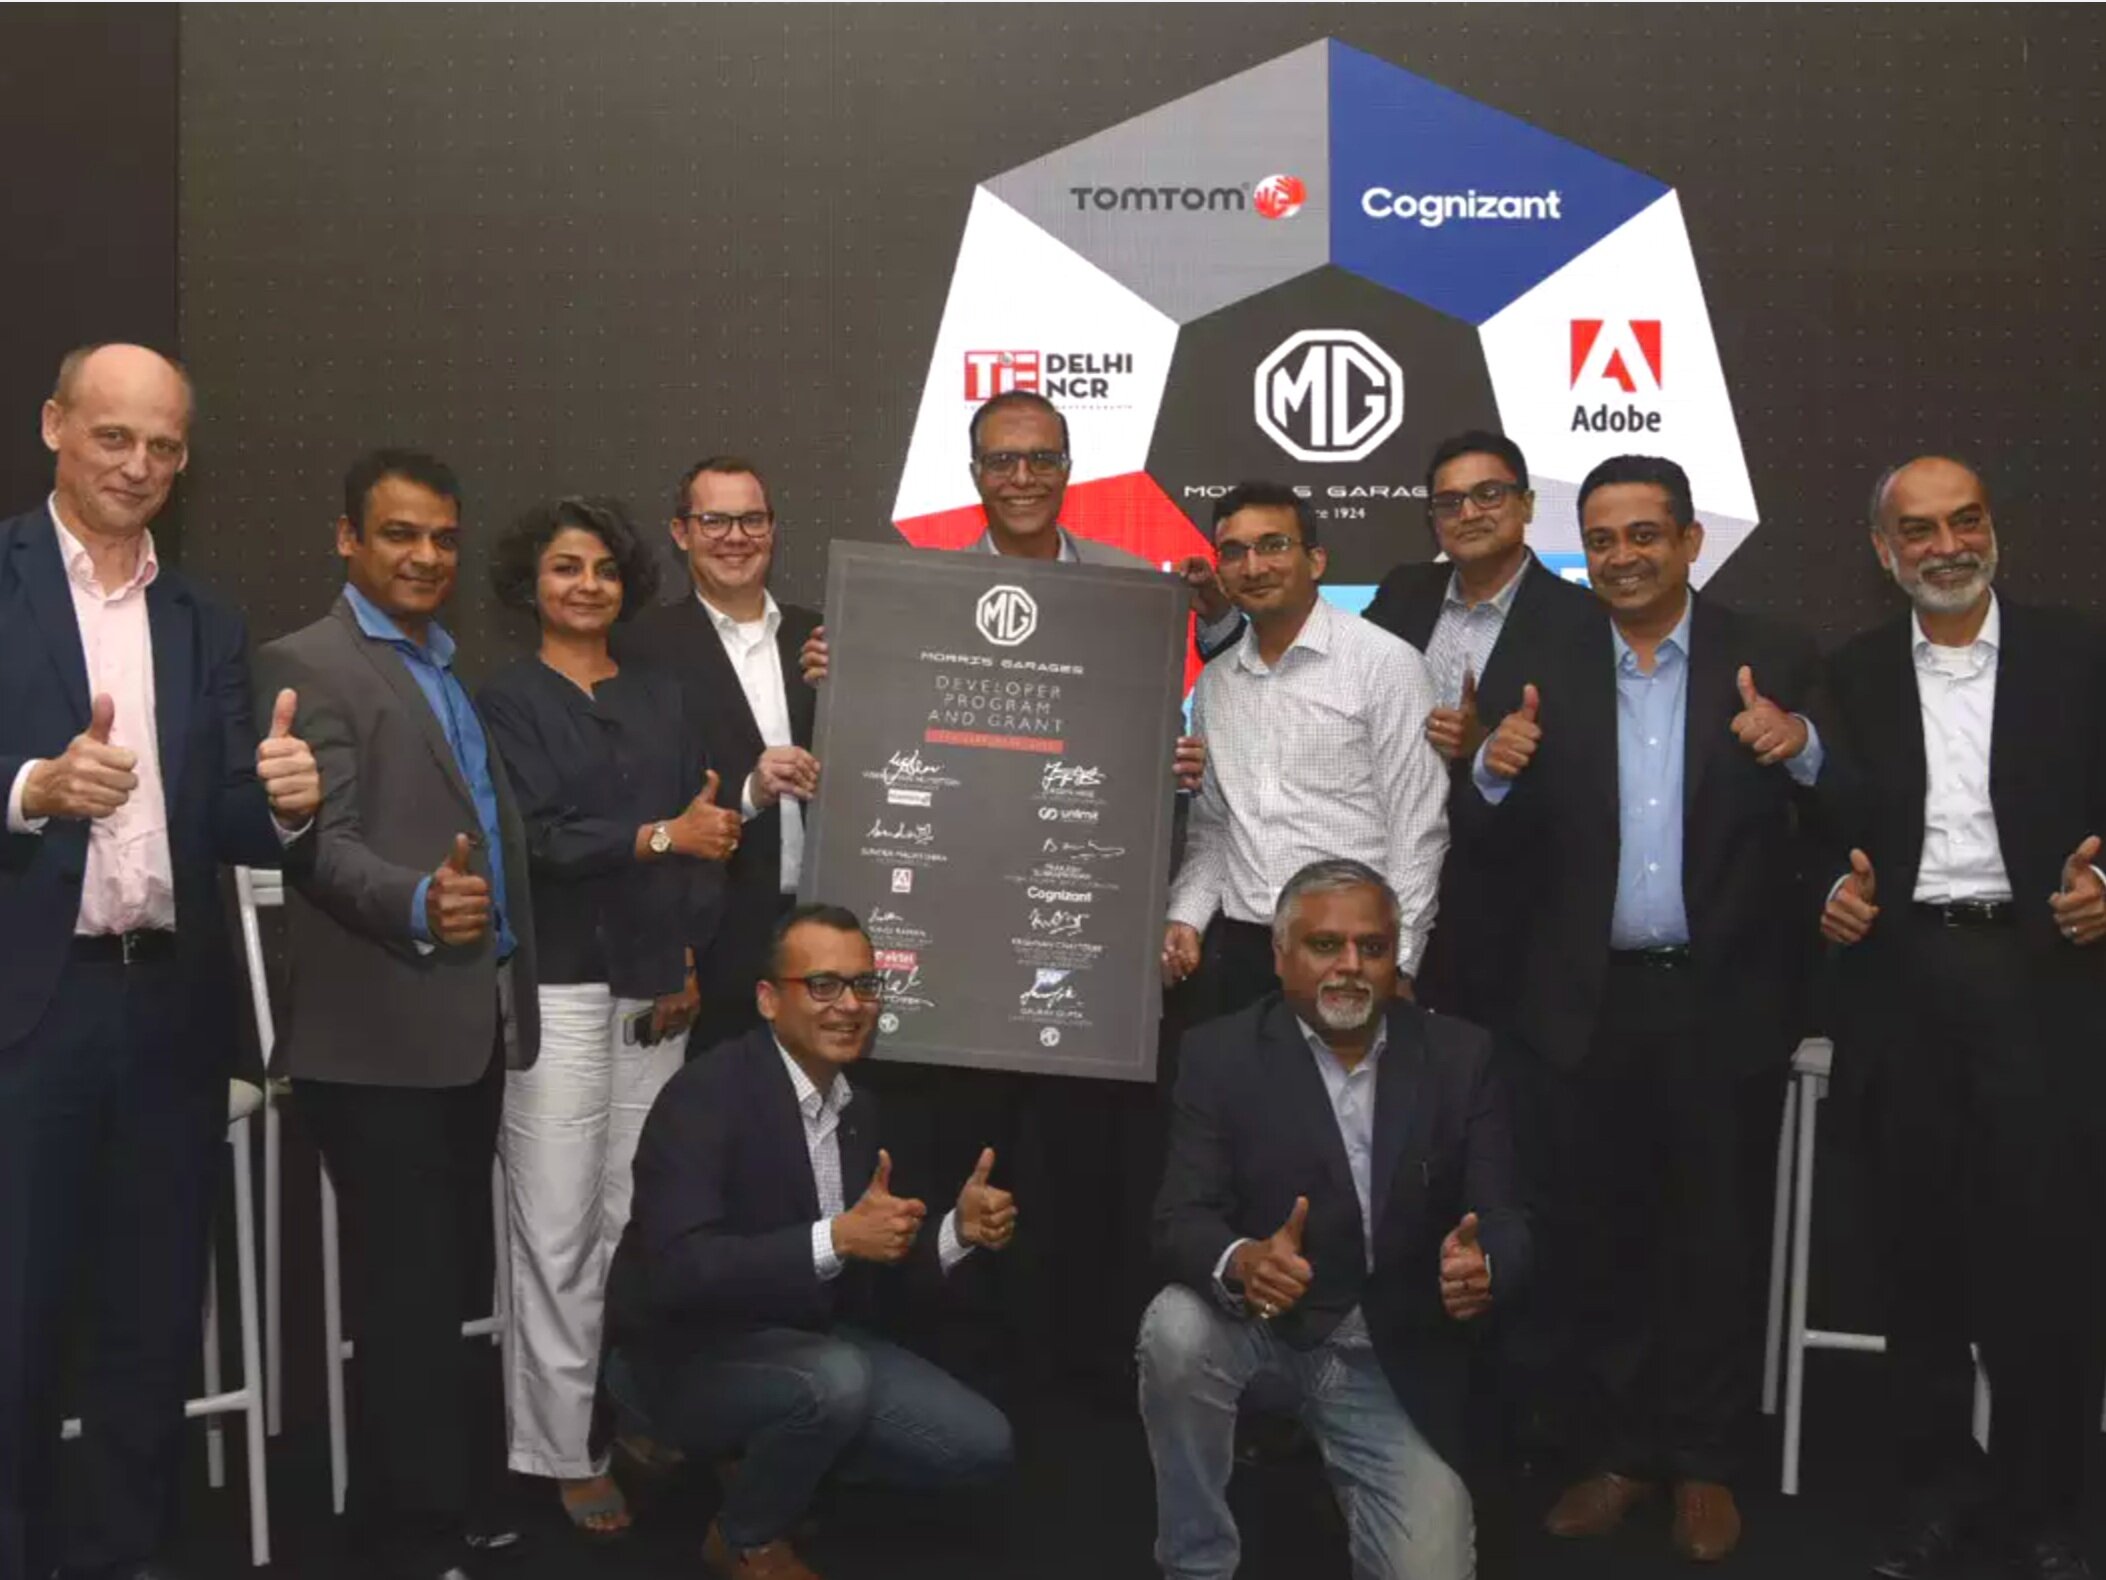 MG ha acquistato la tecnologia intelligente di TomTom per la sua prima auto connessa indiana: la MG Hector